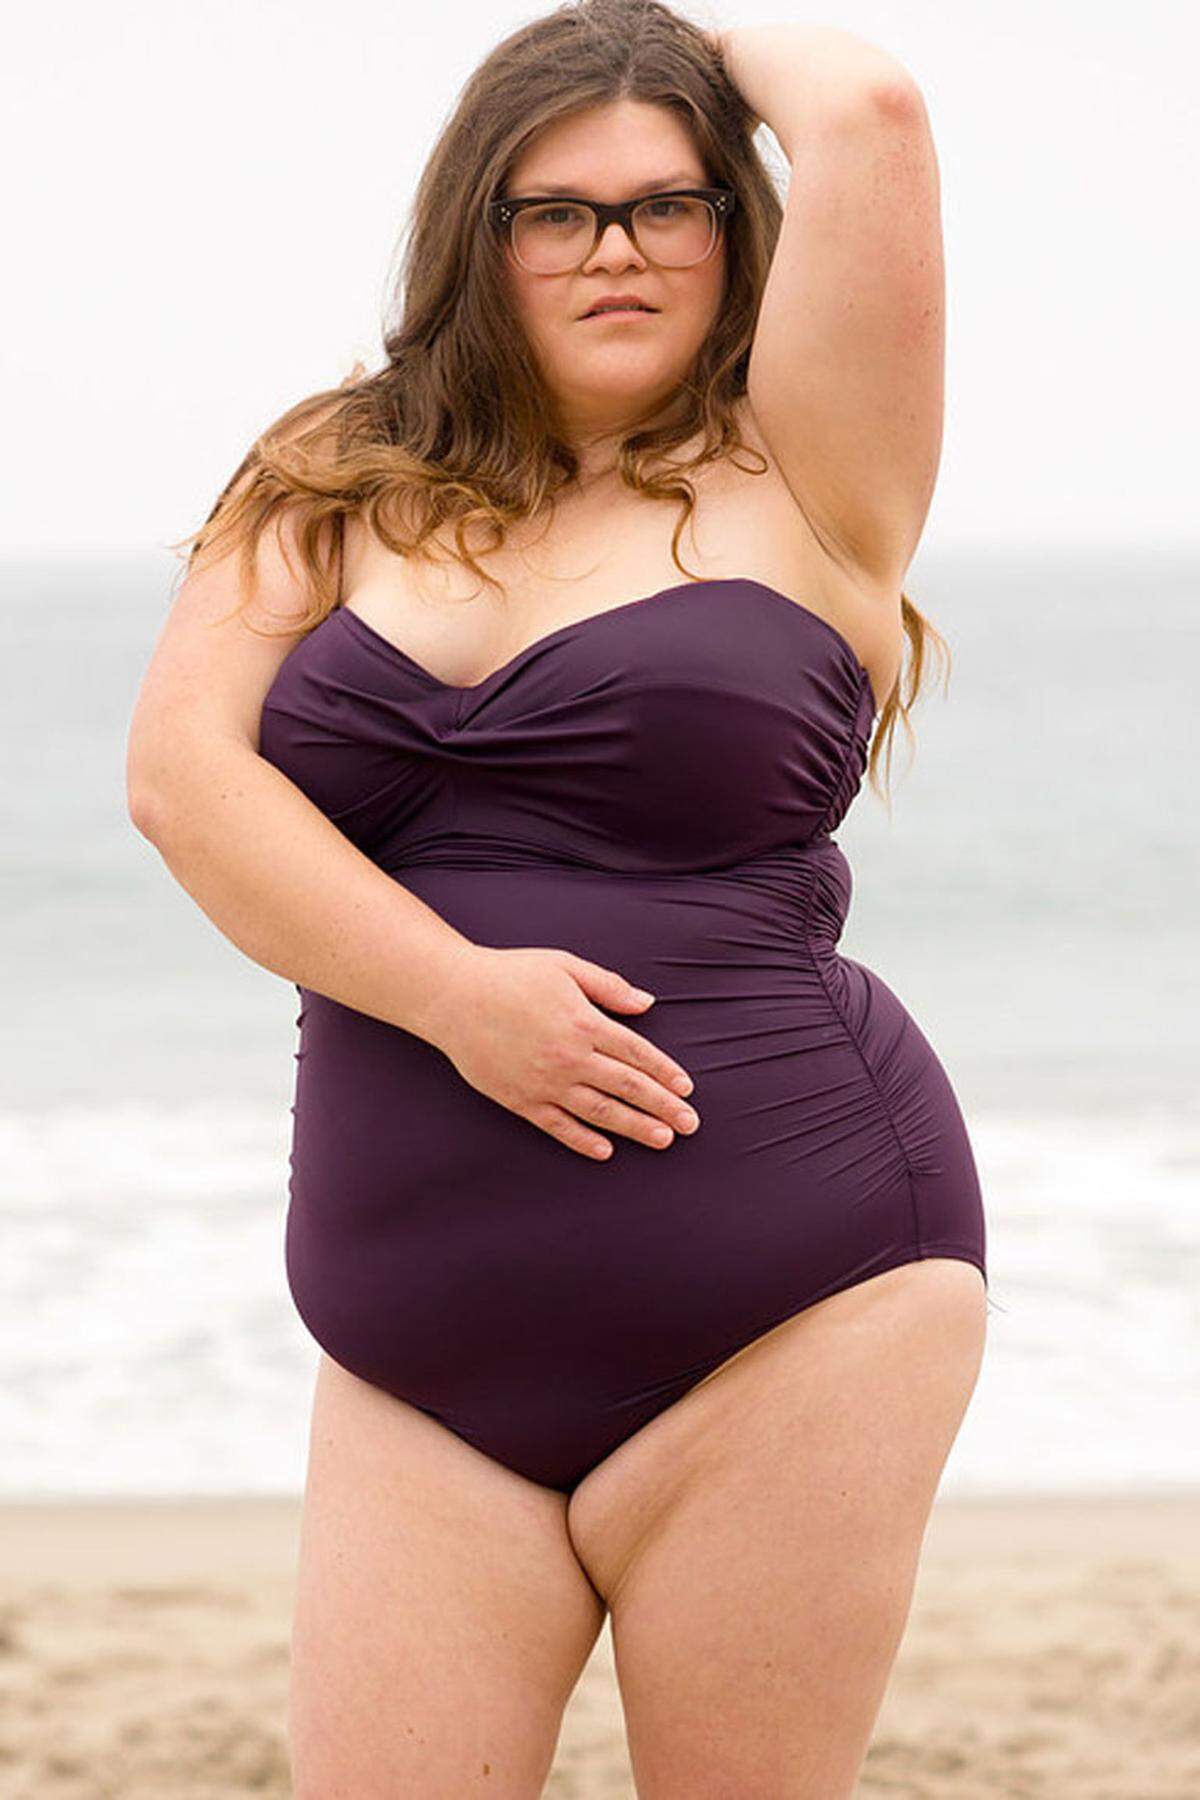 Am Stand von Malibu ließ sich Kristin im violetten Einteiler ablichten. Kristin fühlte sich im Badeanzug zwar wohl und hatte Spaß, die Pose war aber nach eigenen Angaben aber weder natürlich noch vorteilhaft.